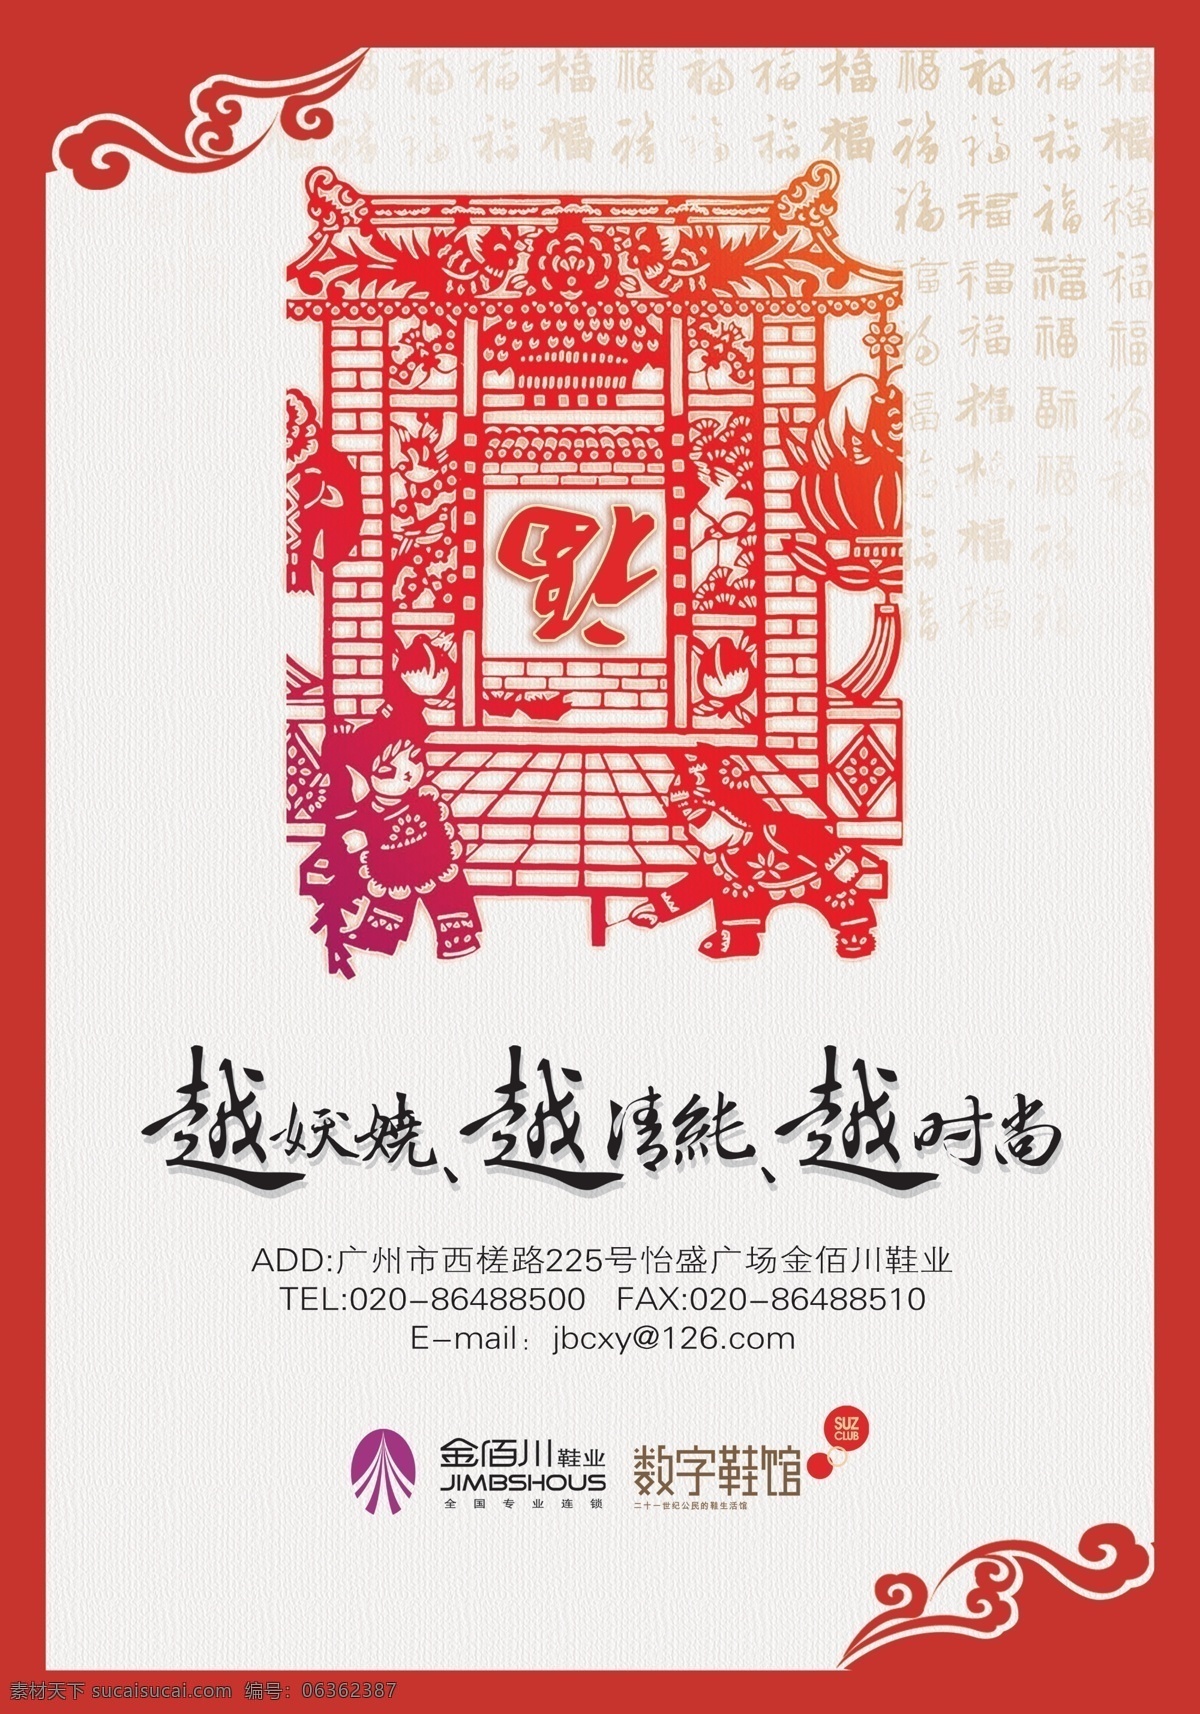 剪纸 鞋 世界 模板 鞋世界 春节 福字 时尚 中国风 广告设计模板 源文件 分层 红色